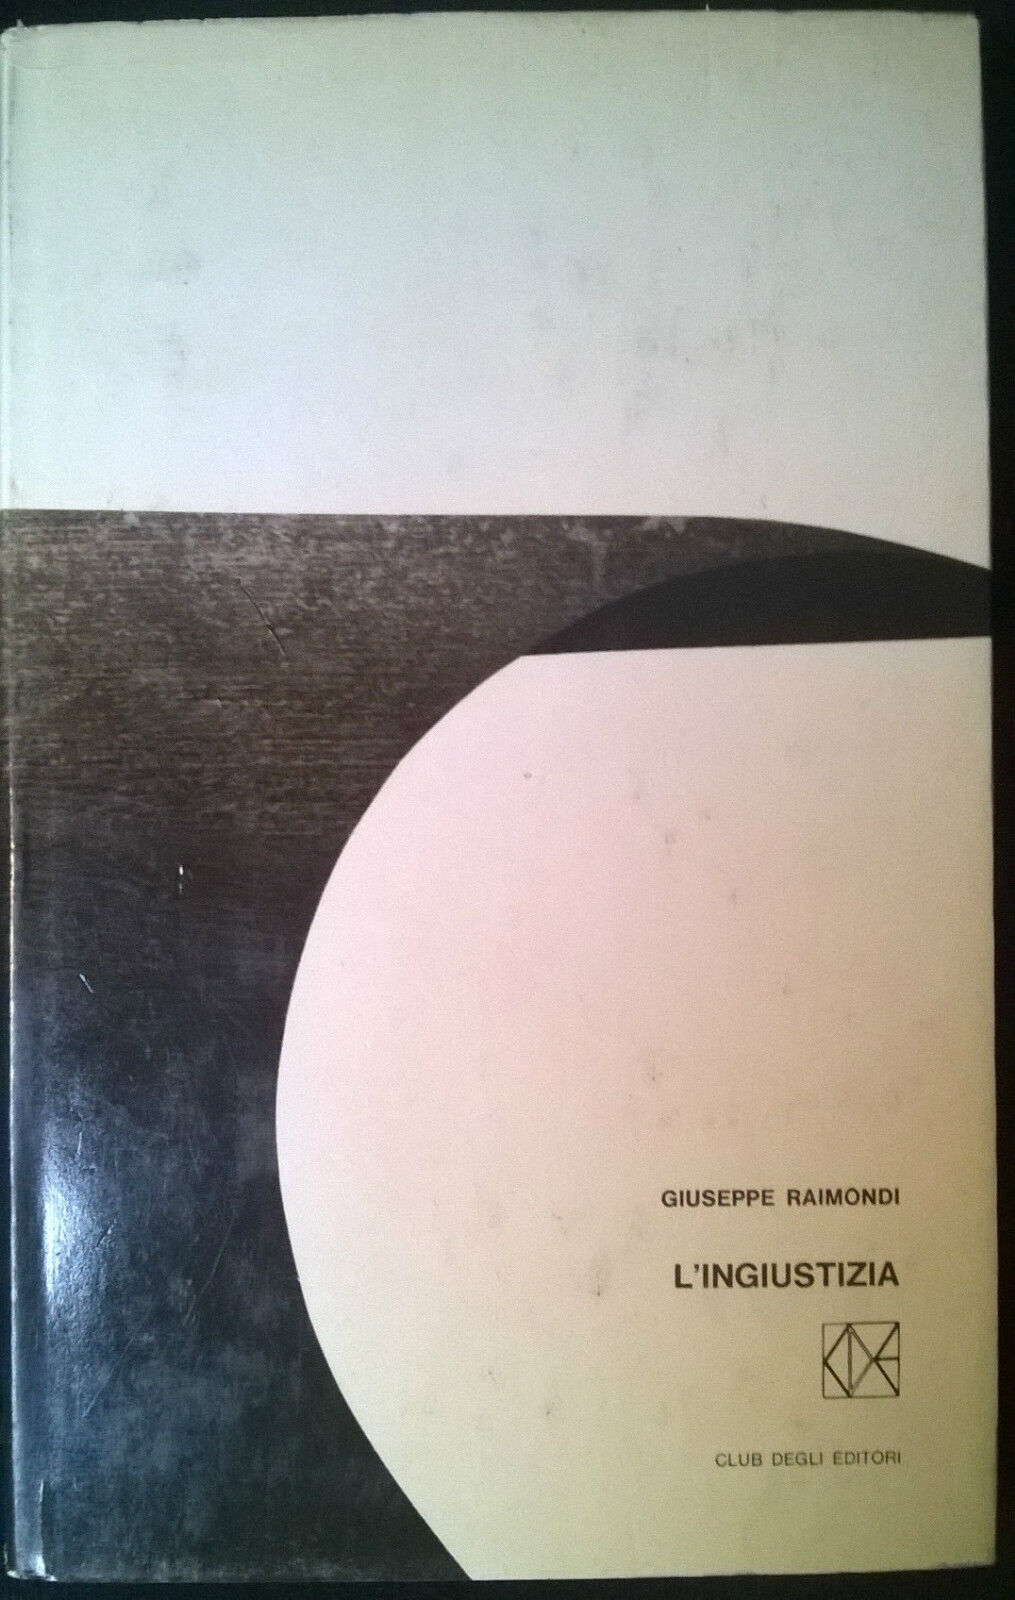  L'ingiustizia - Giuseppe Raimondi - Club degli editori,1965 - L